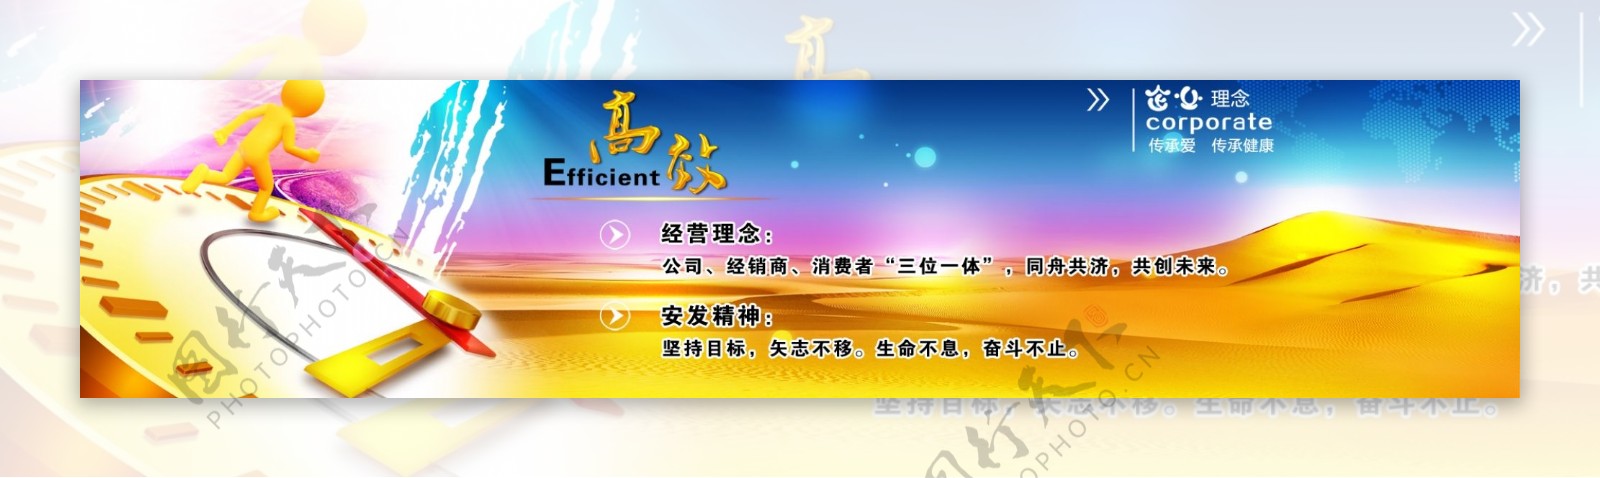 金色企业官网banner